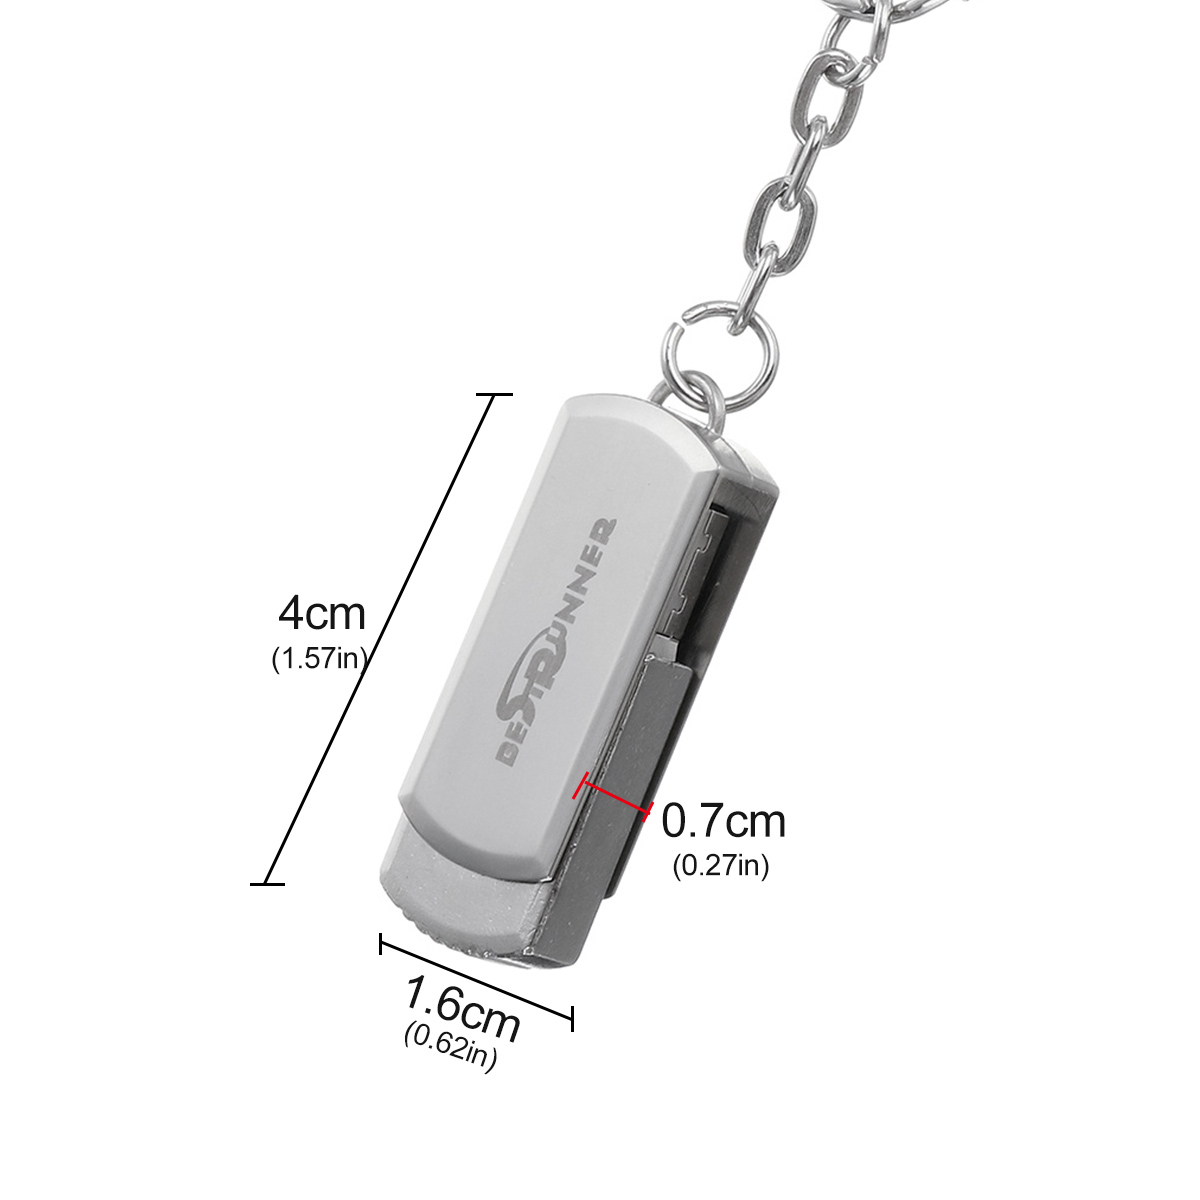 USB-Flash-Drive-USB-20-16GB-32GB-64GB-360ordm-Rotation-Metal-Flash-Memory-Card-USB-Stick-Pen-Drive-U-1718772-4